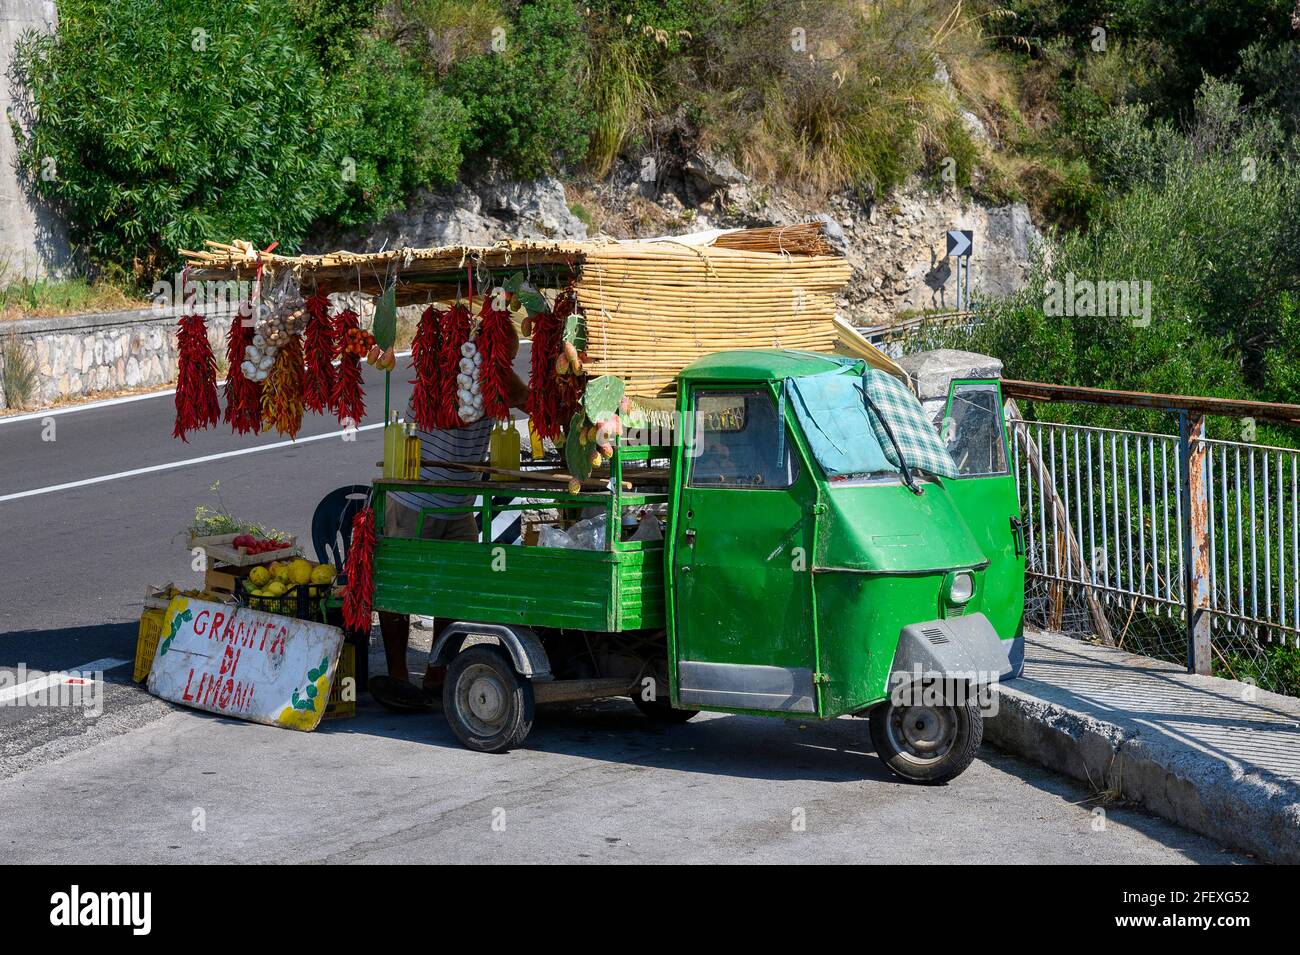 Un petit stand mobile de vente sur la route en Italie avec différents types de fruits et légumes. Banque D'Images